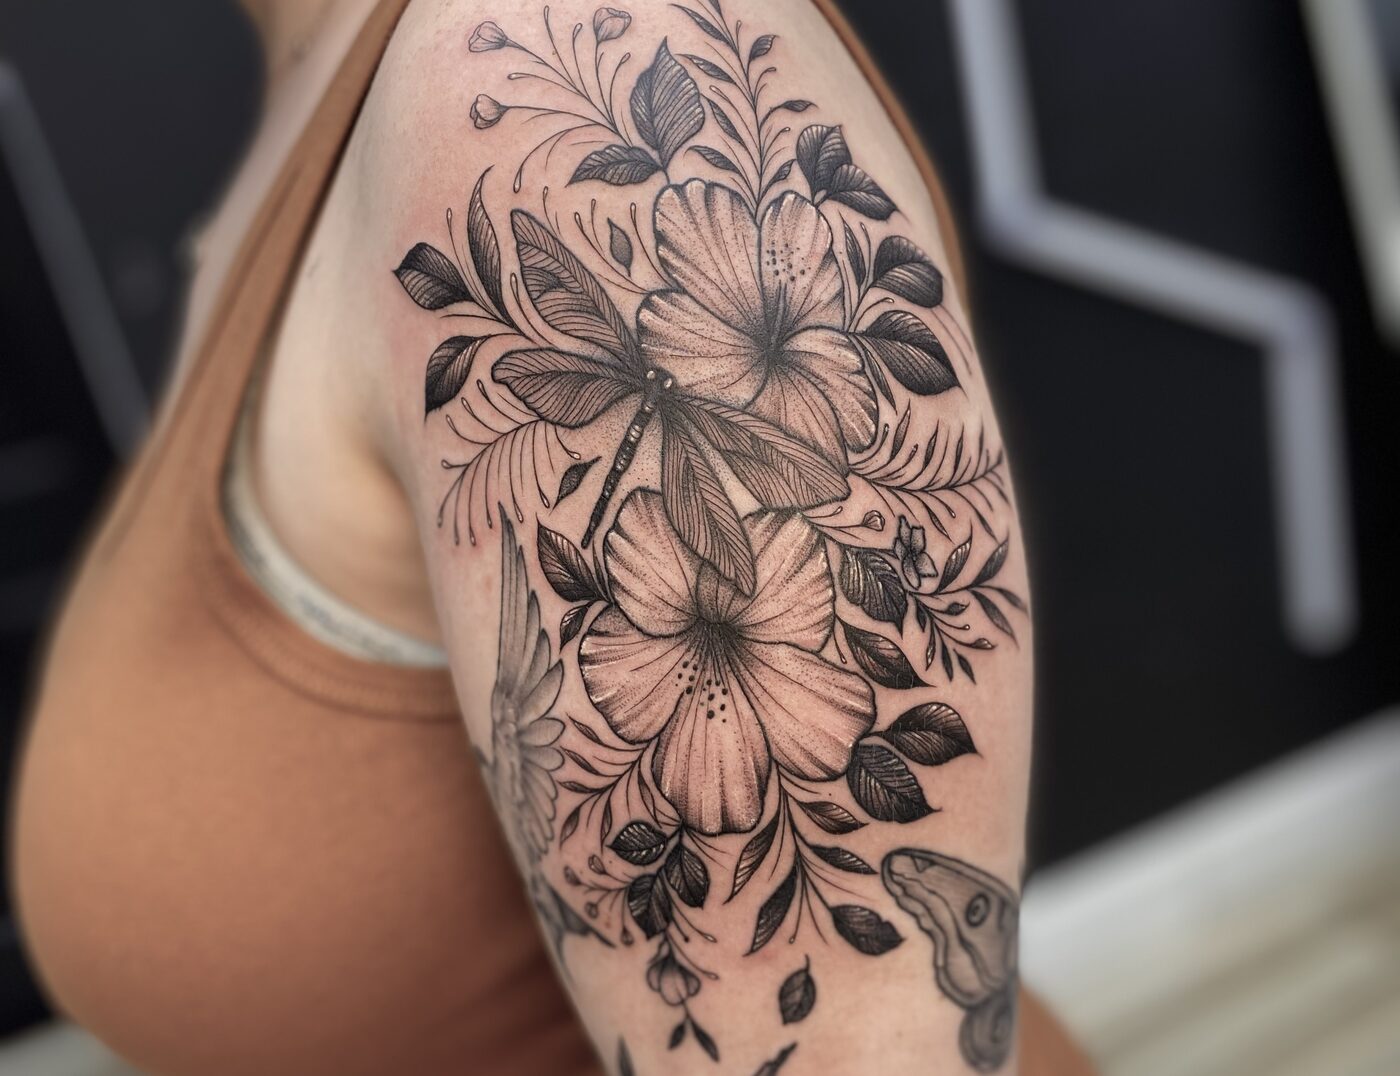 Lotus temporary tattoo